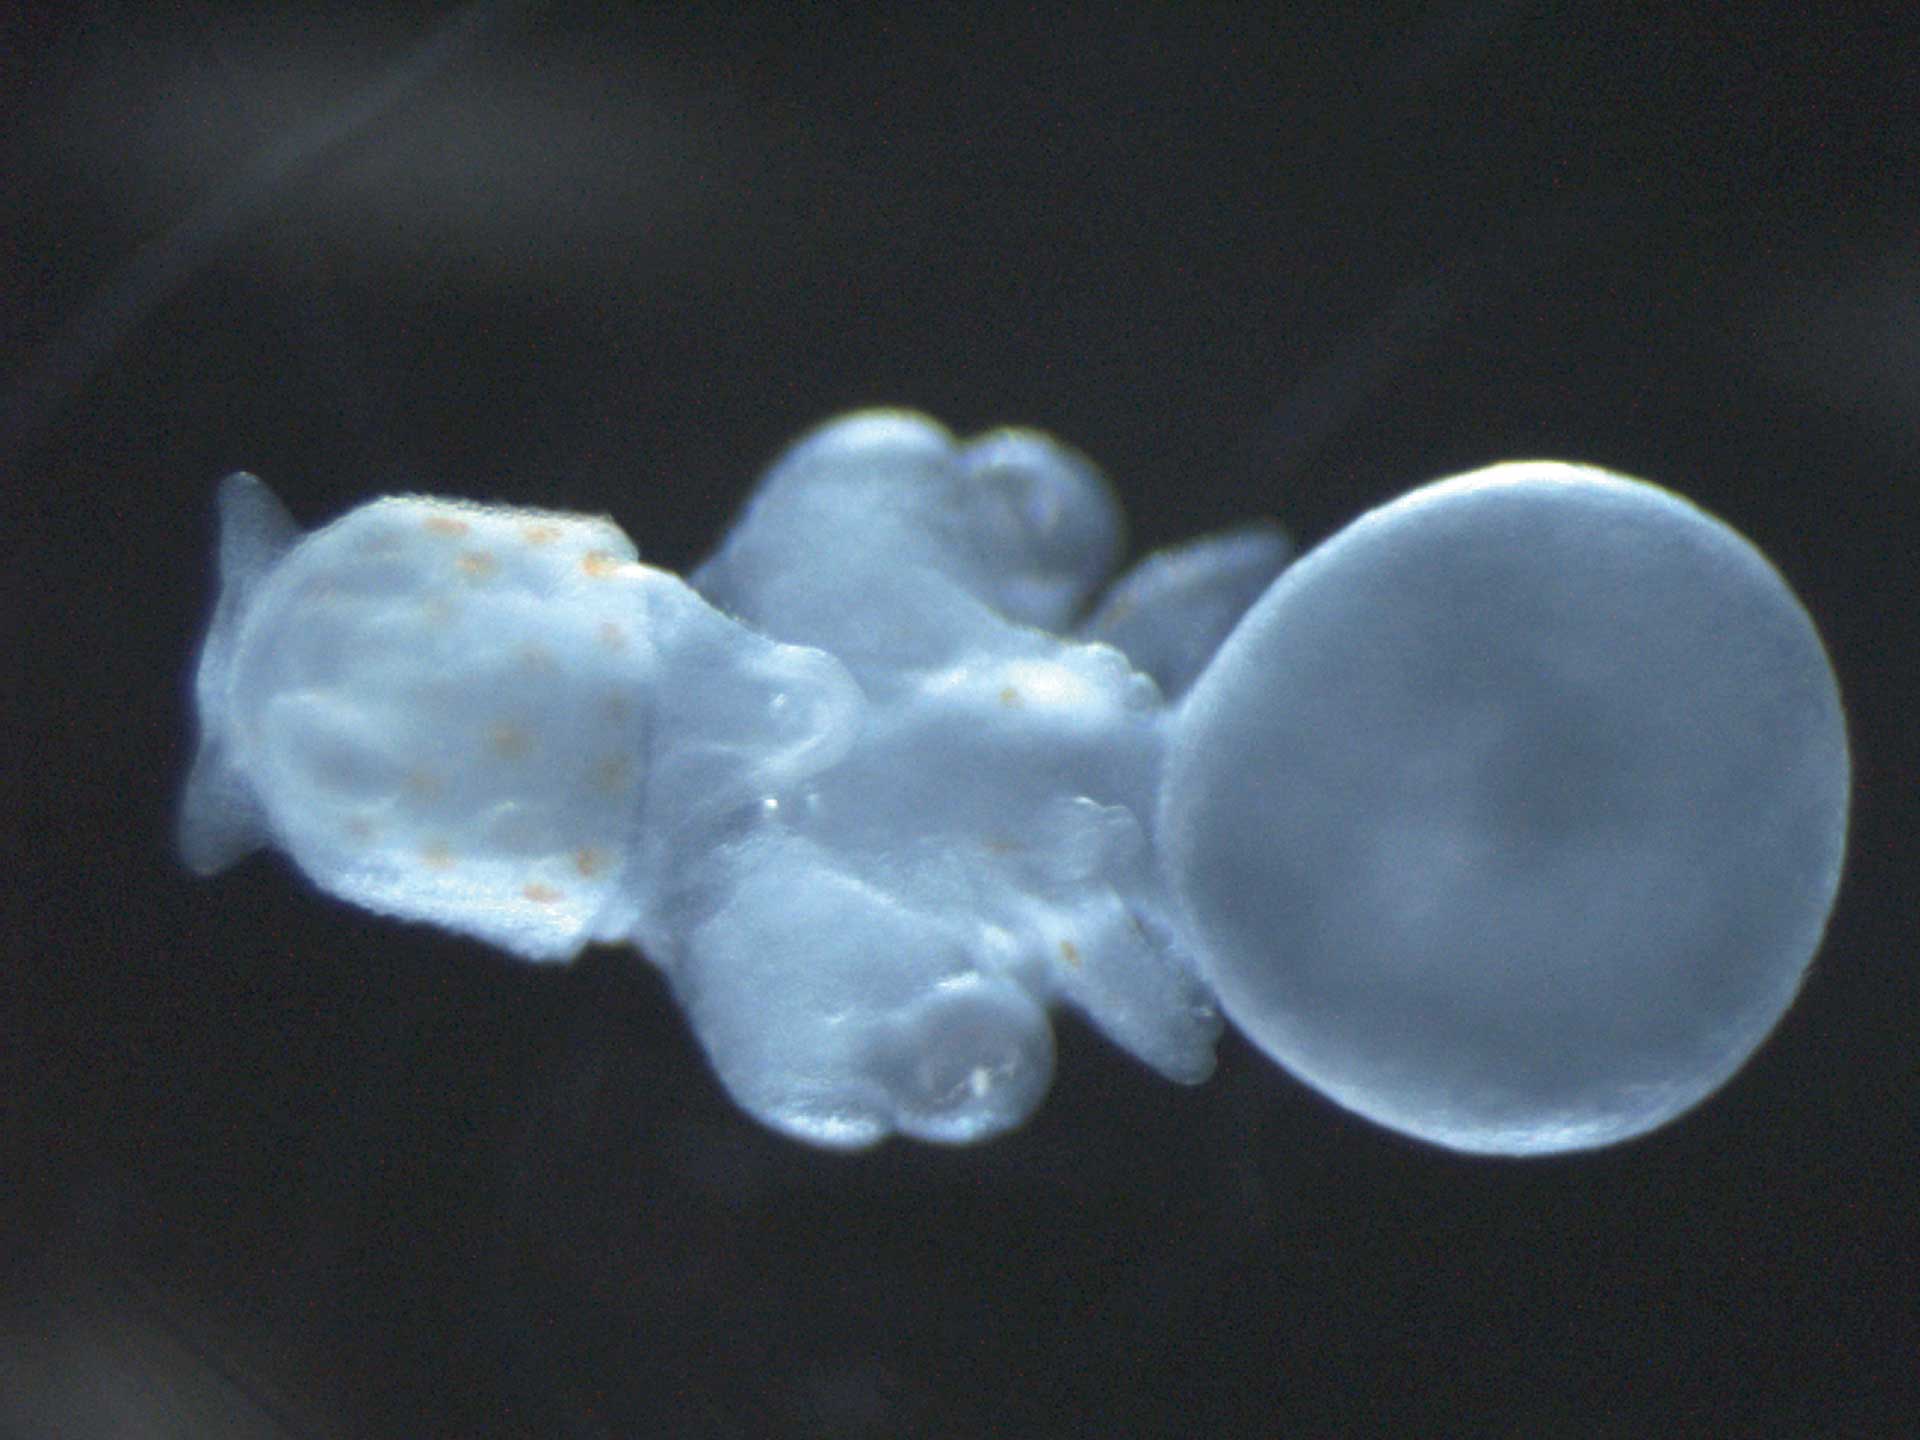 鱿鱼胚胎阶段 美国马萨诸塞州剑桥大学生物和进化生物系Cassandra Extravour博士